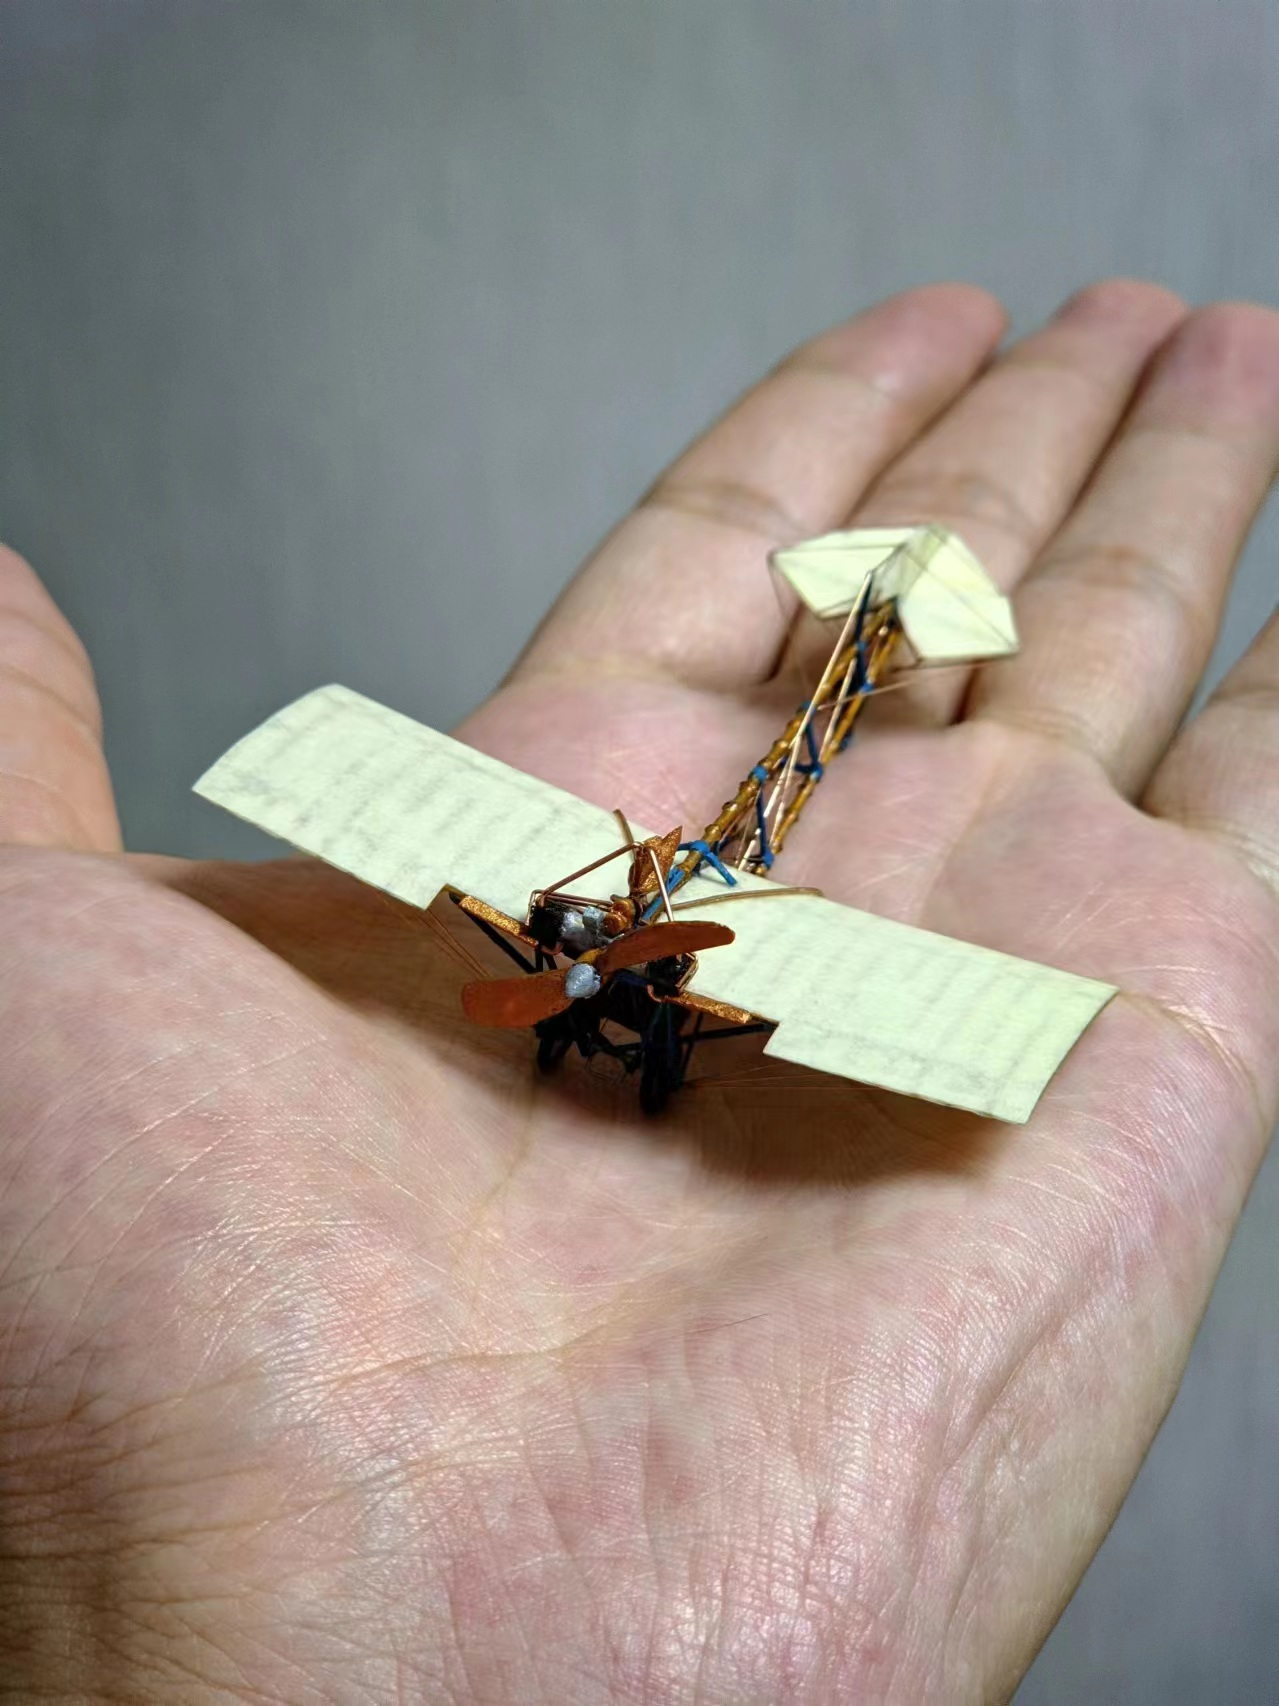 大眾航空先行者：1/90比例桑托斯-杜蒙20型「豆娘」單翼機紙制模型全製作流程